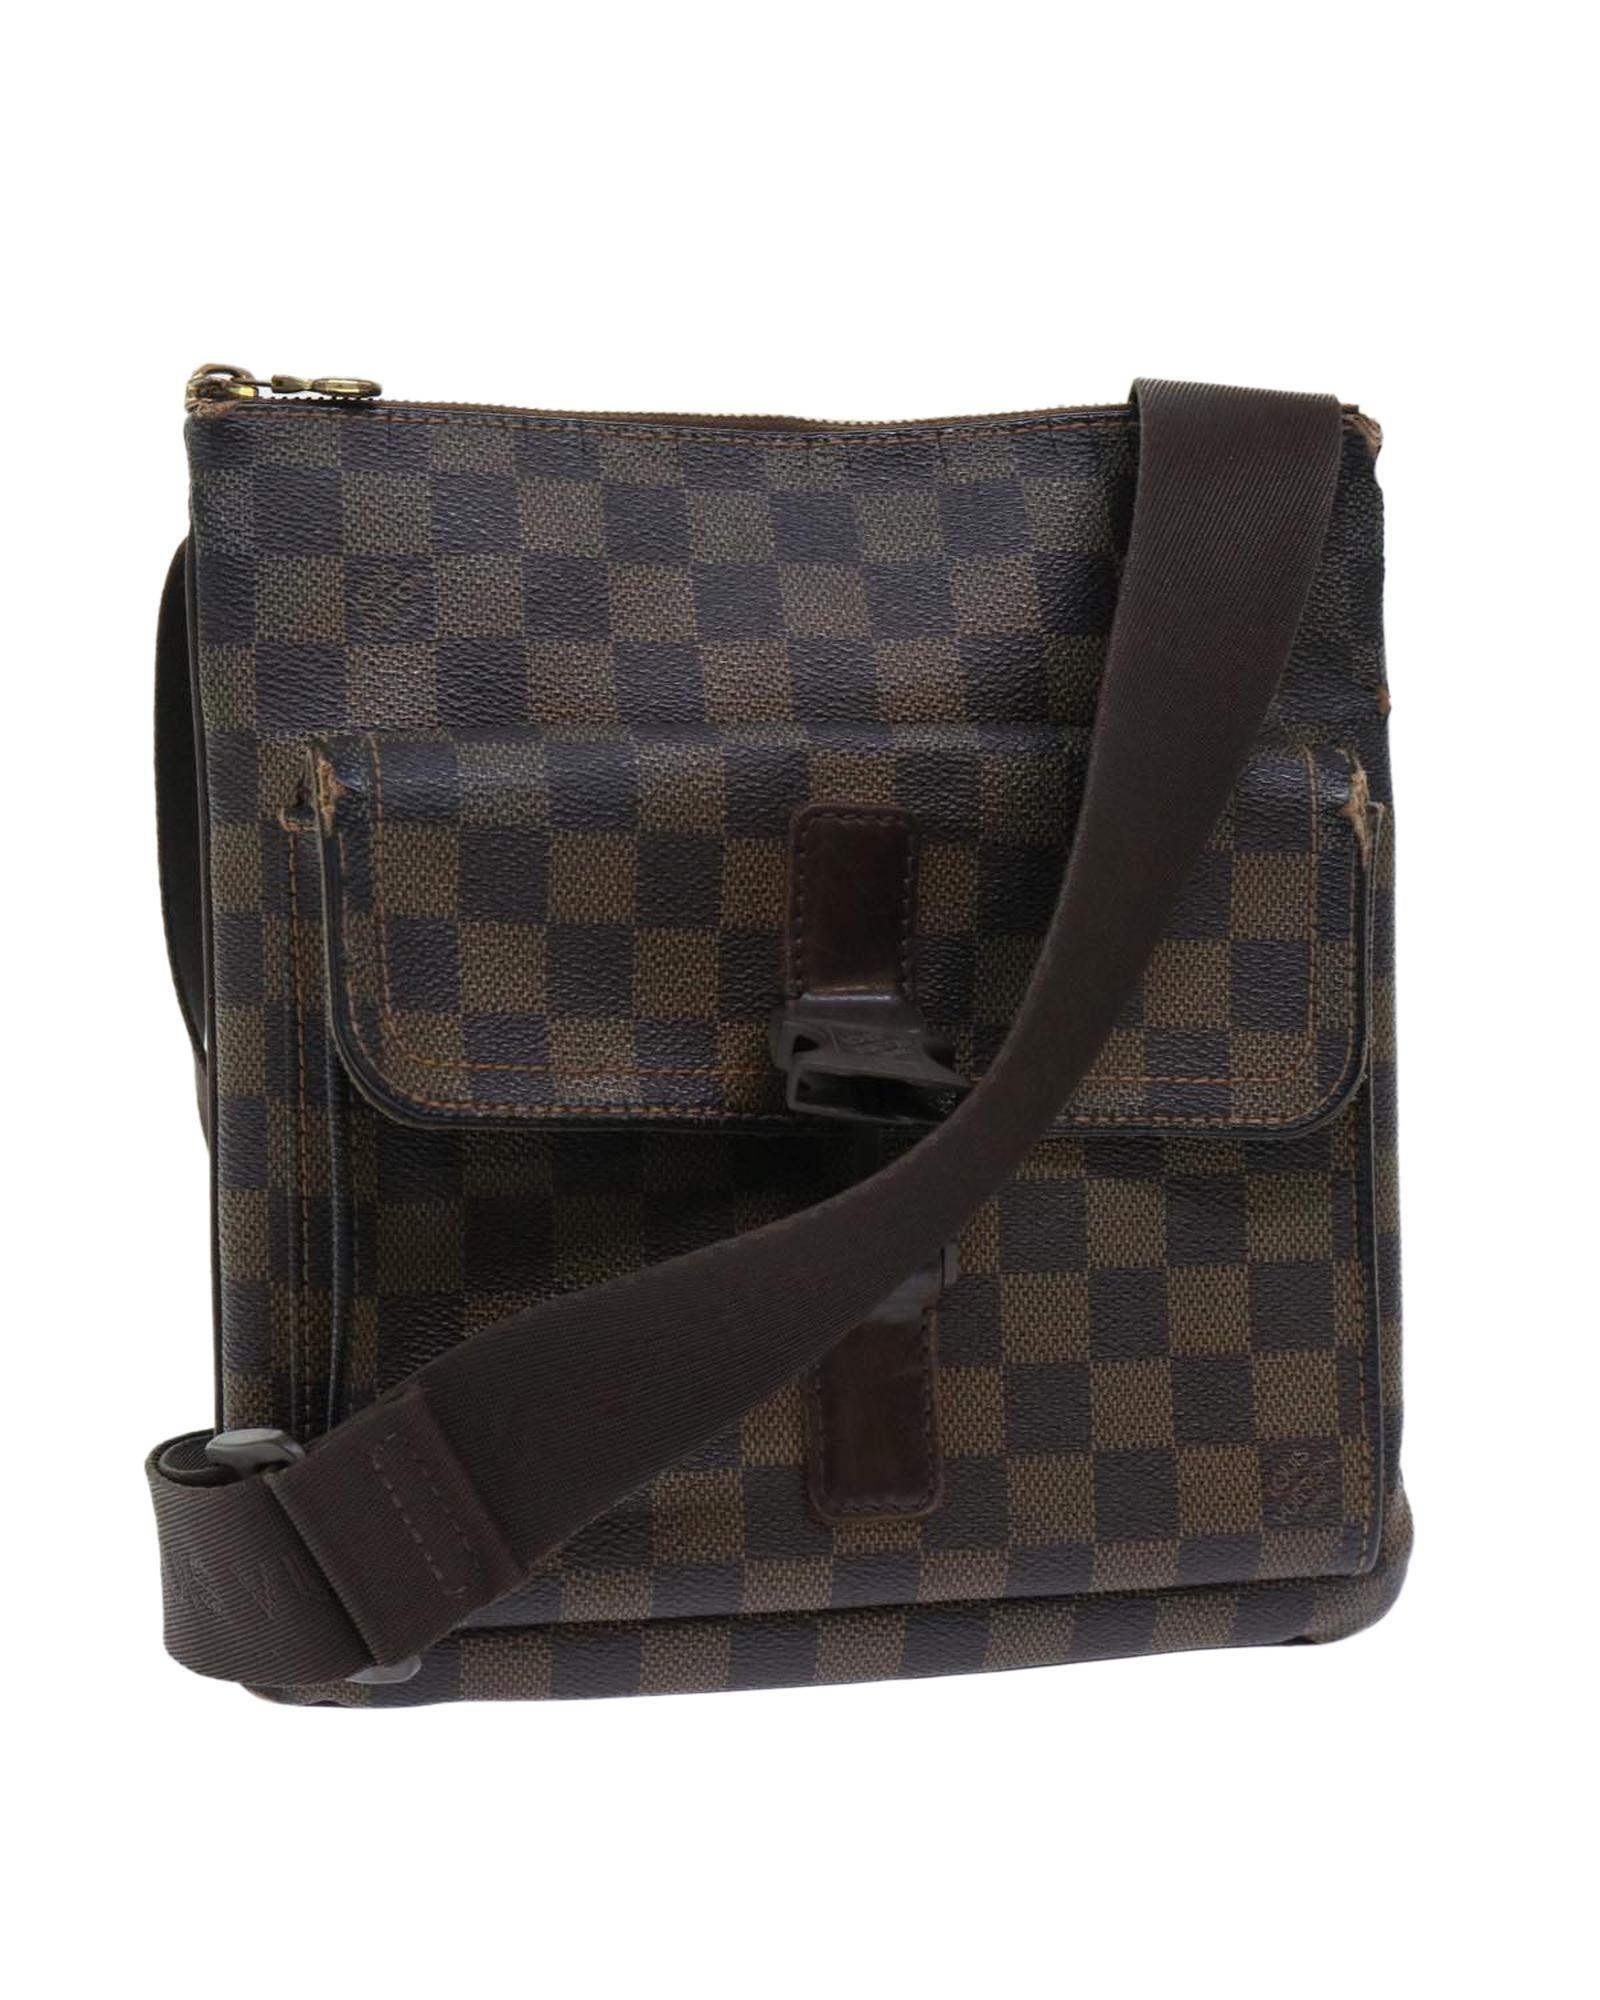 Leather Adjustable Crossbody Bag Strap - For lv Ebene Shoulder